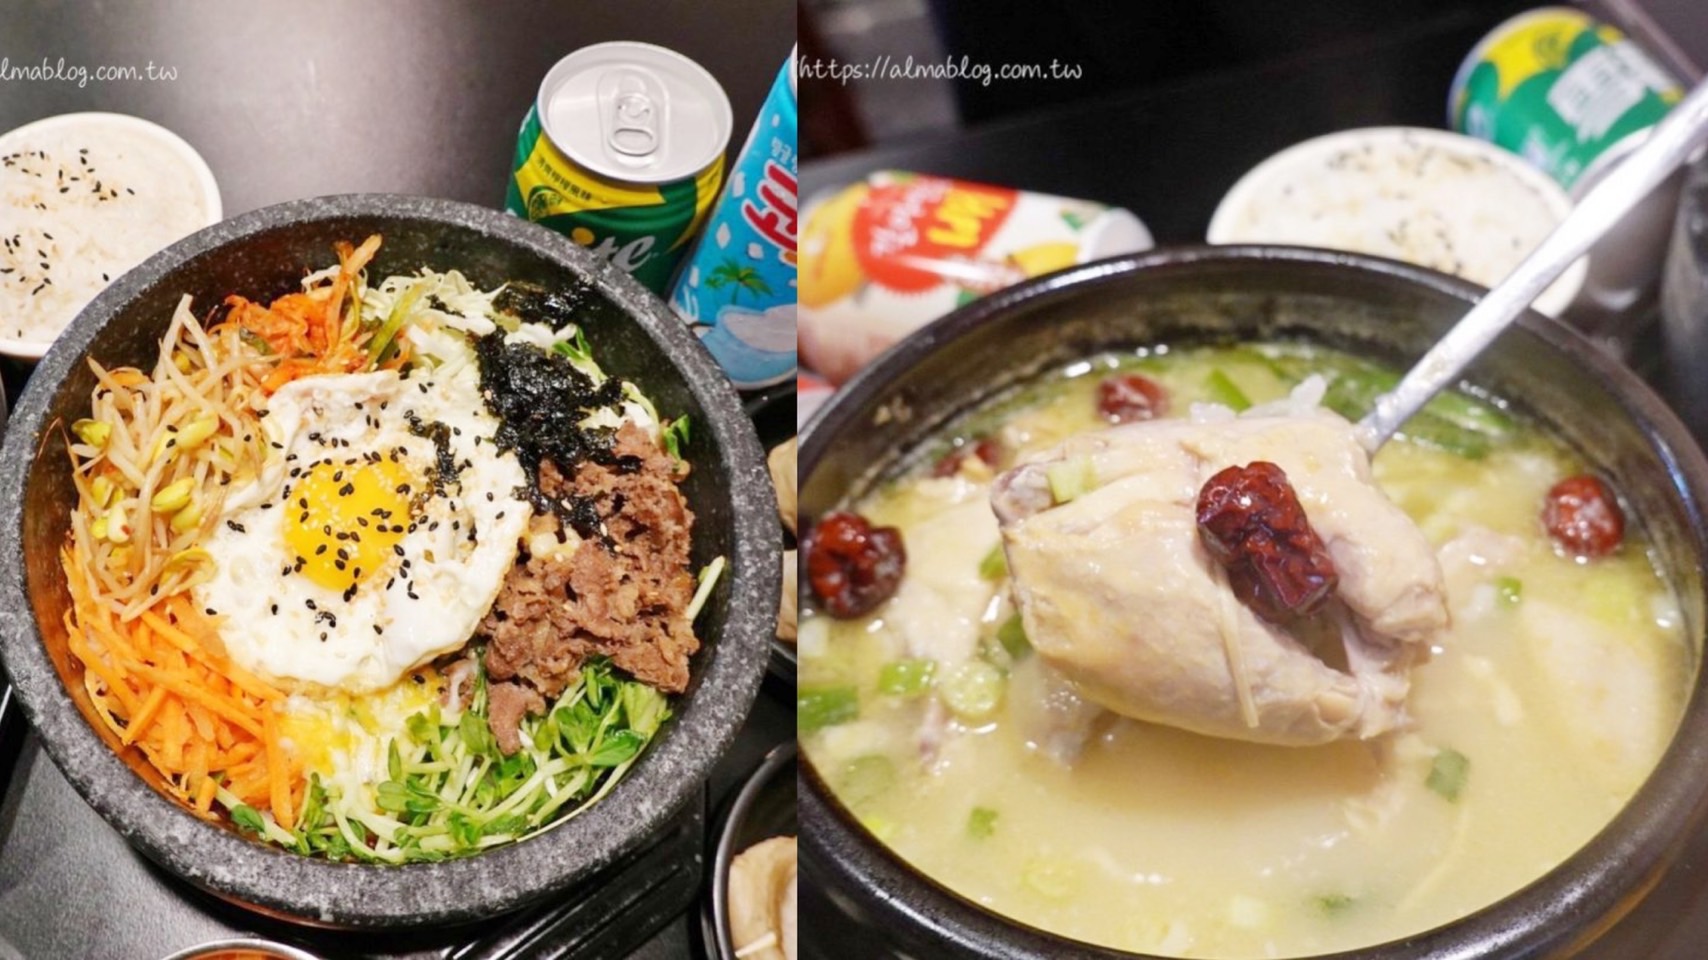 人蔘雞,捏捏飯糰,石鍋拌飯,韓式料理,韓式泡菜,韓歐尼 @艾瑪  吃喝玩樂札記